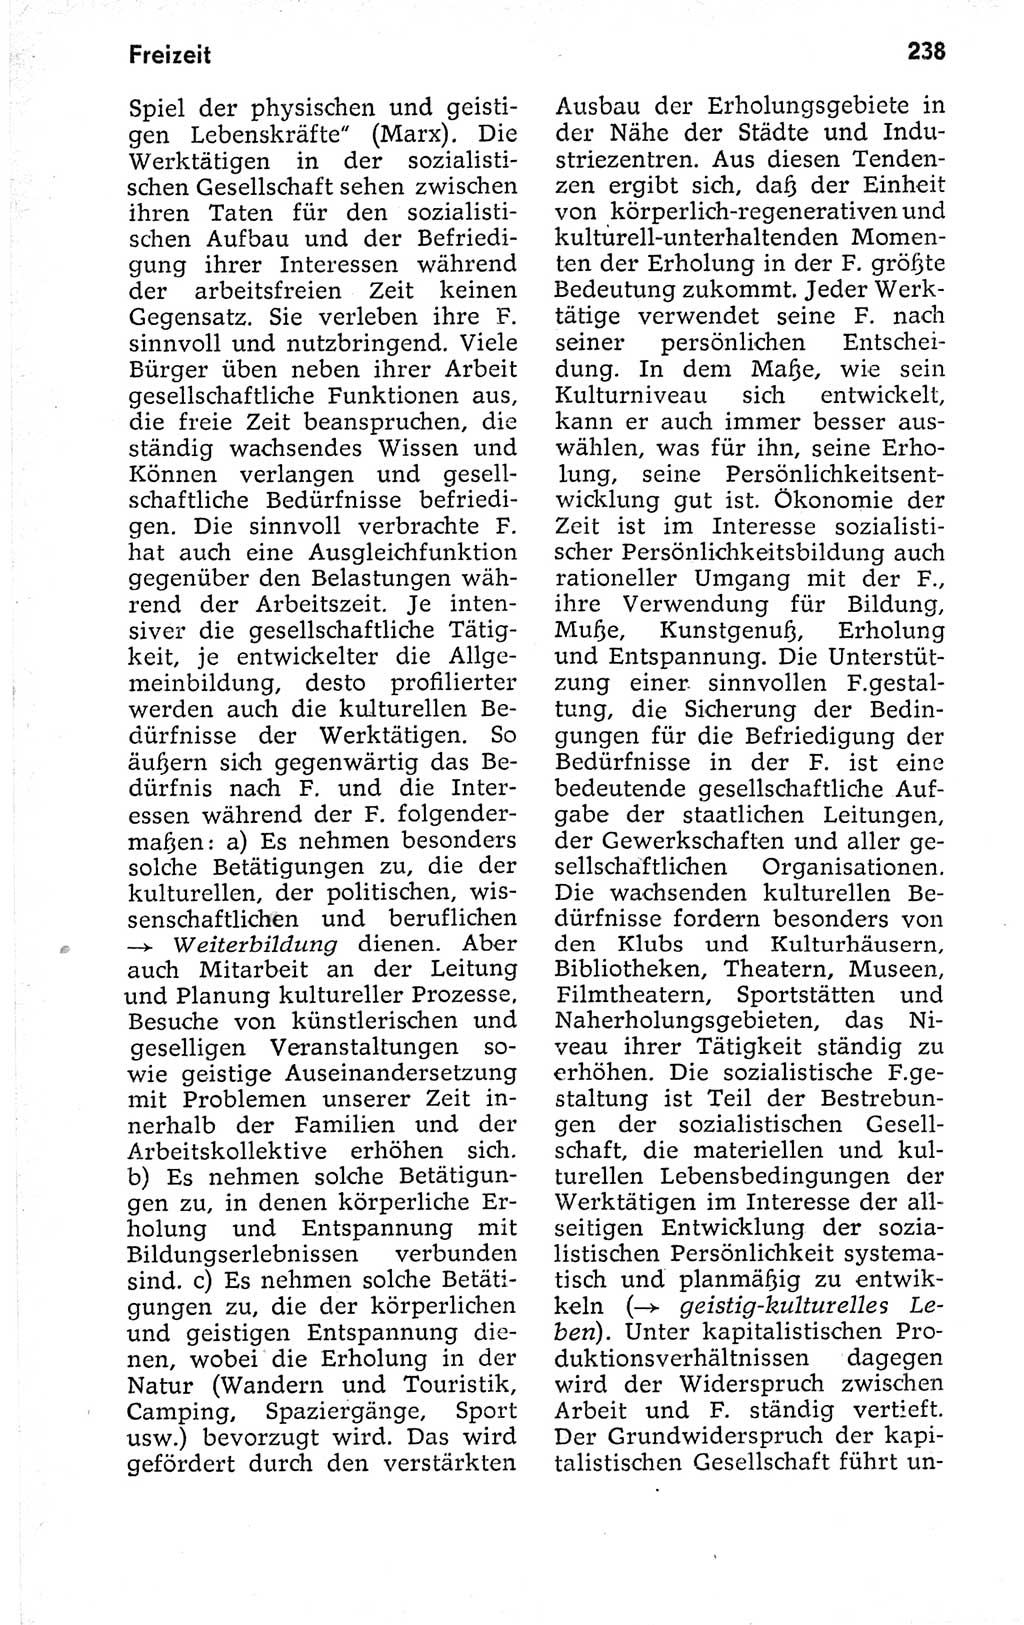 Kleines politisches Wörterbuch [Deutsche Demokratische Republik (DDR)] 1973, Seite 238 (Kl. pol. Wb. DDR 1973, S. 238)